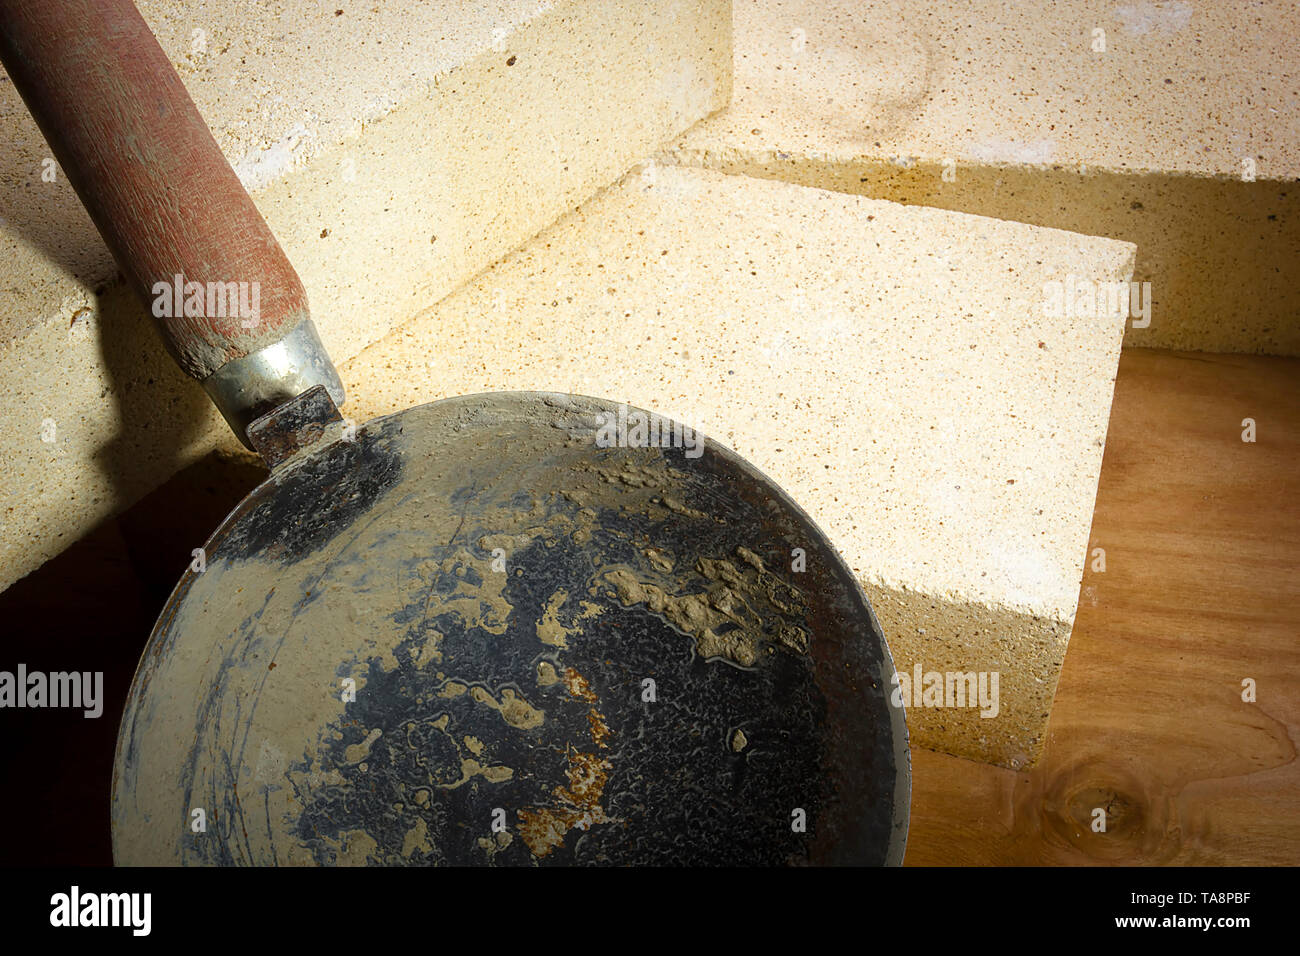 Cuchara de mortero y ladrillos refractarios sobre una superficie de madera Foto de stock